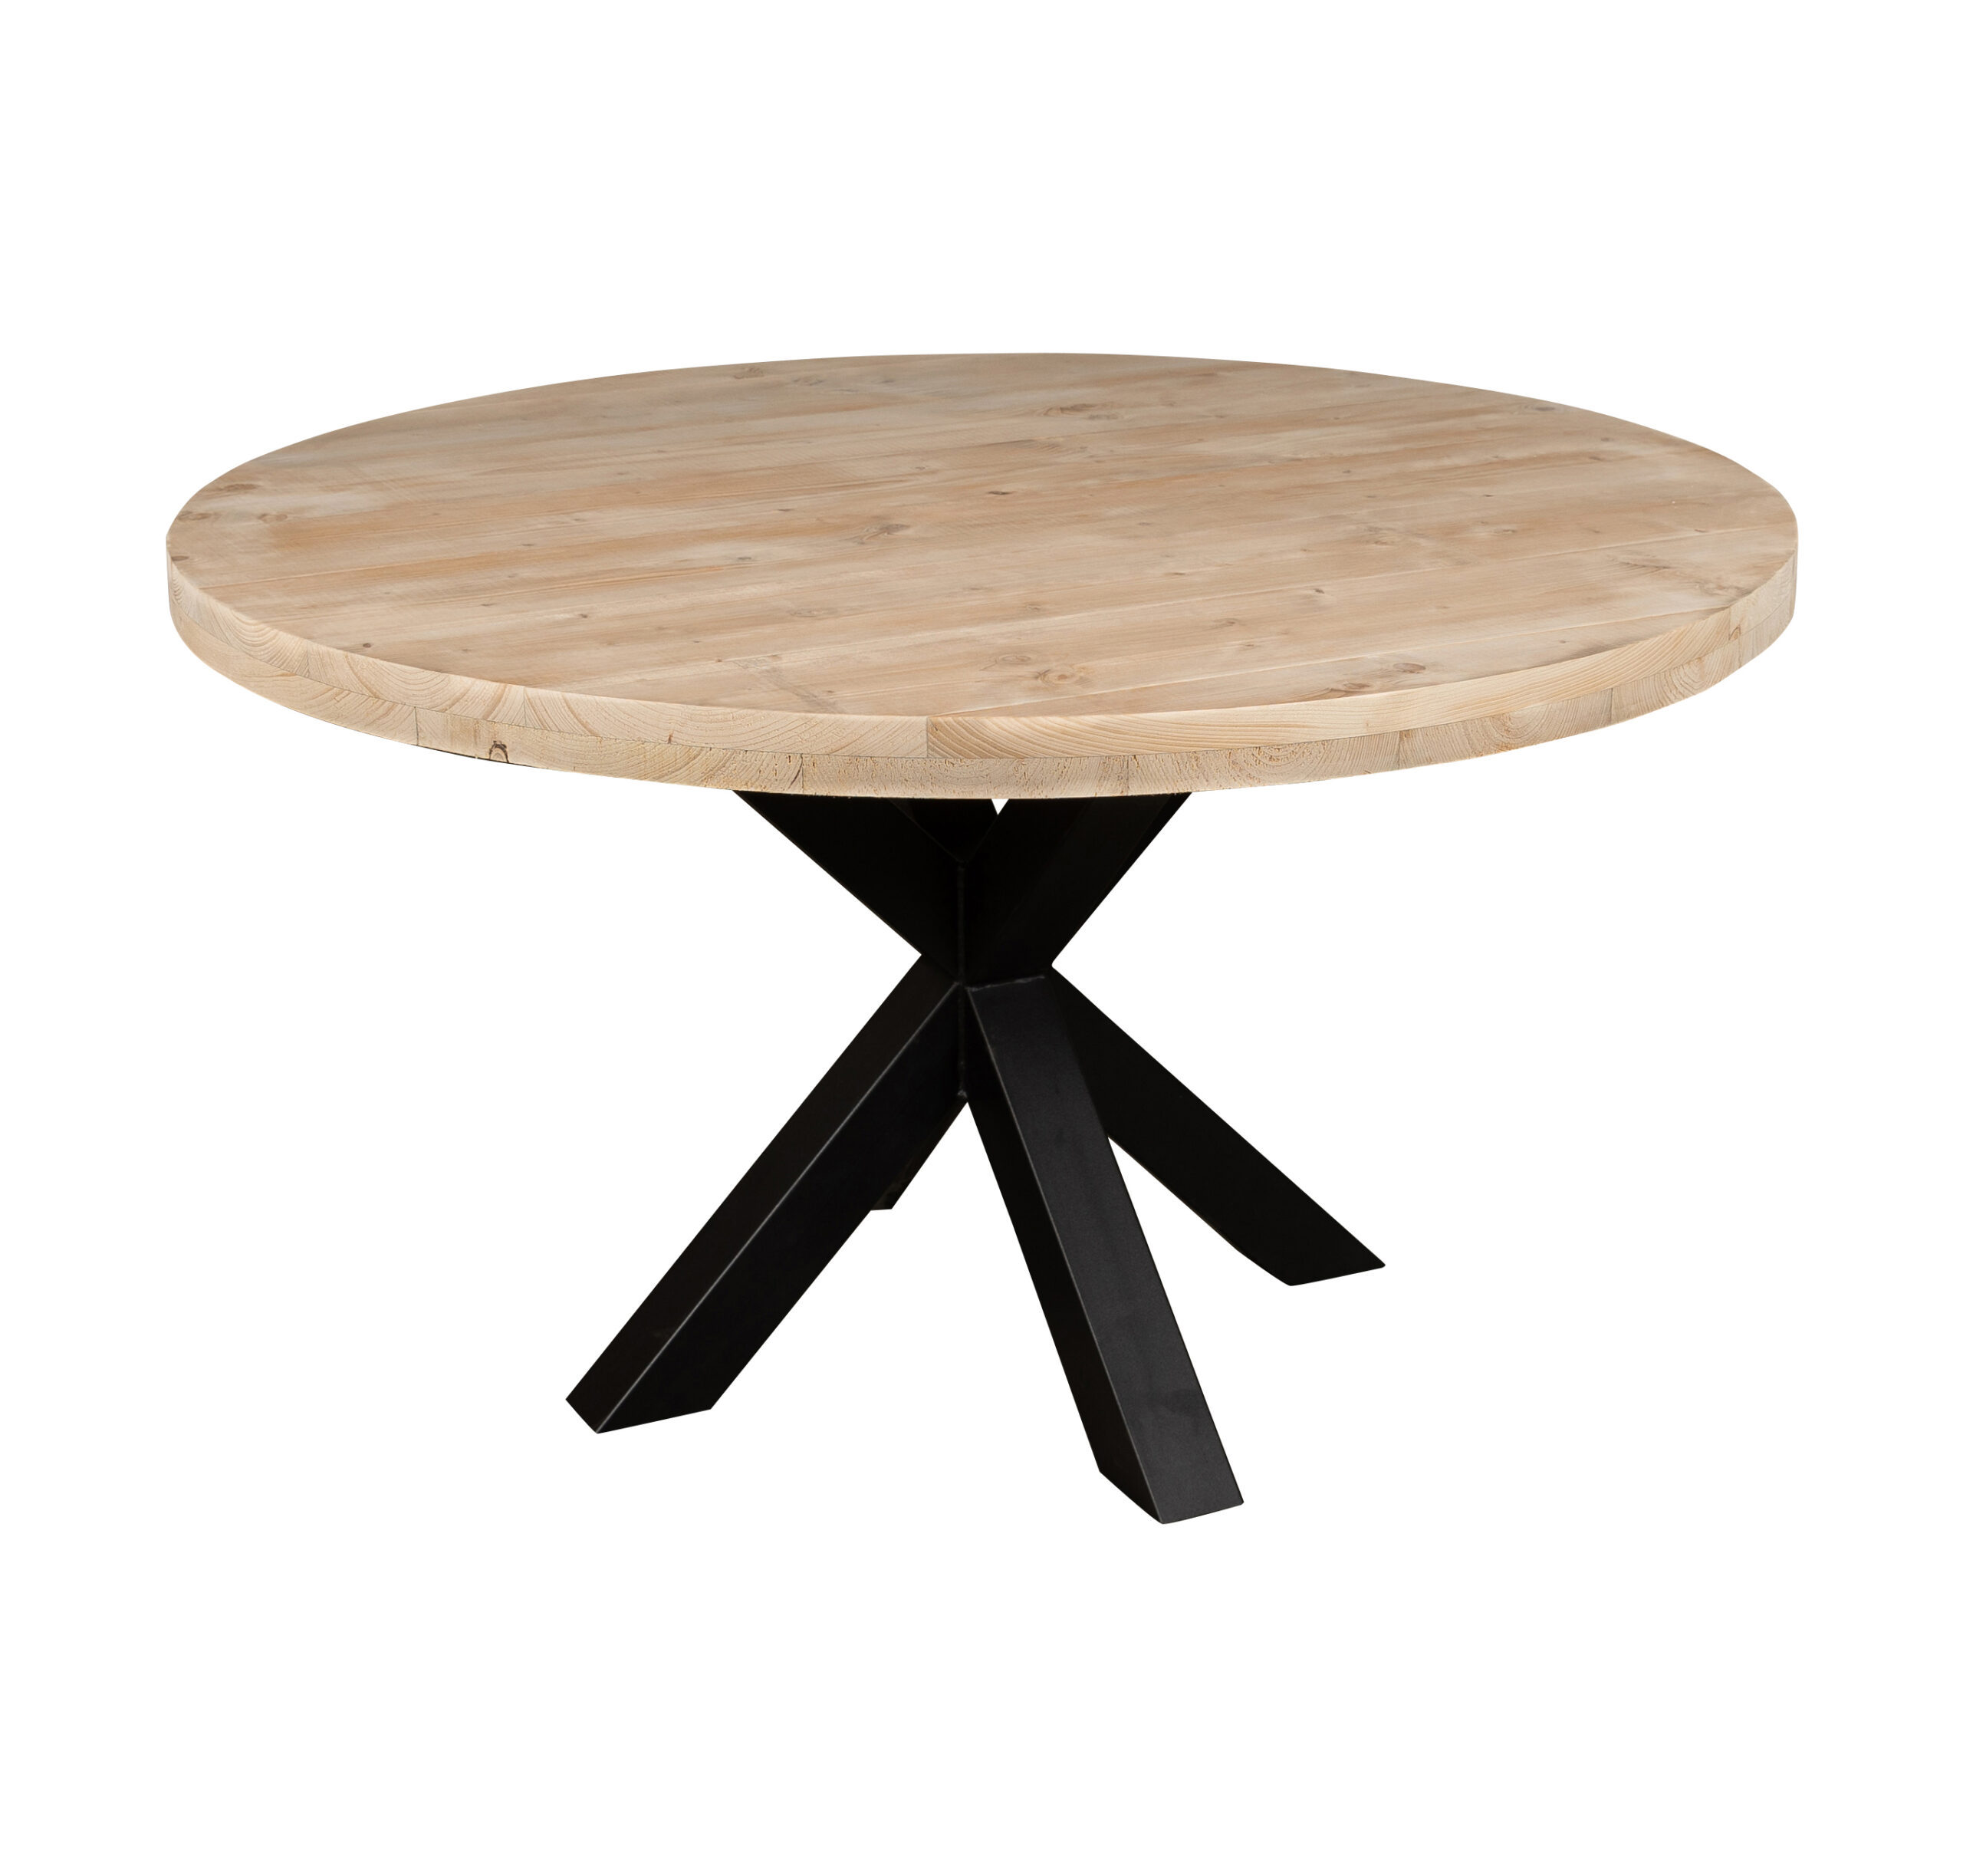 de eerste Sinis dikte Ronde tuintafel - Mooie ronde houten tafels voor buiten - op maat!